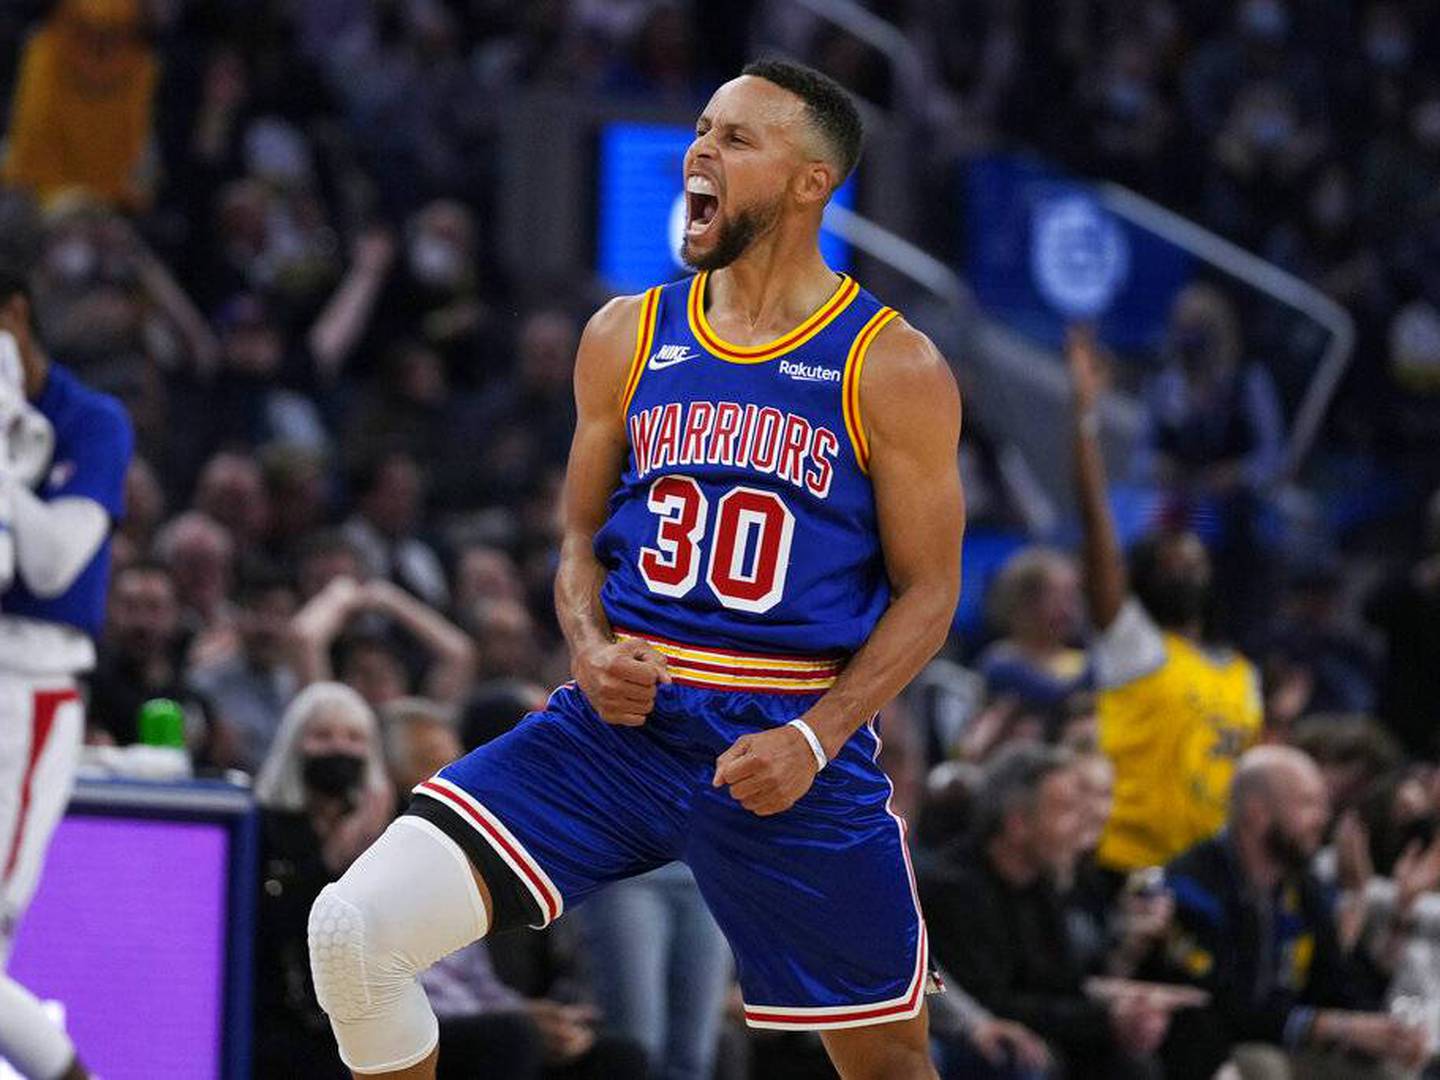 Curry iguala marca histórica, mas Warriors perdem para os Clippers